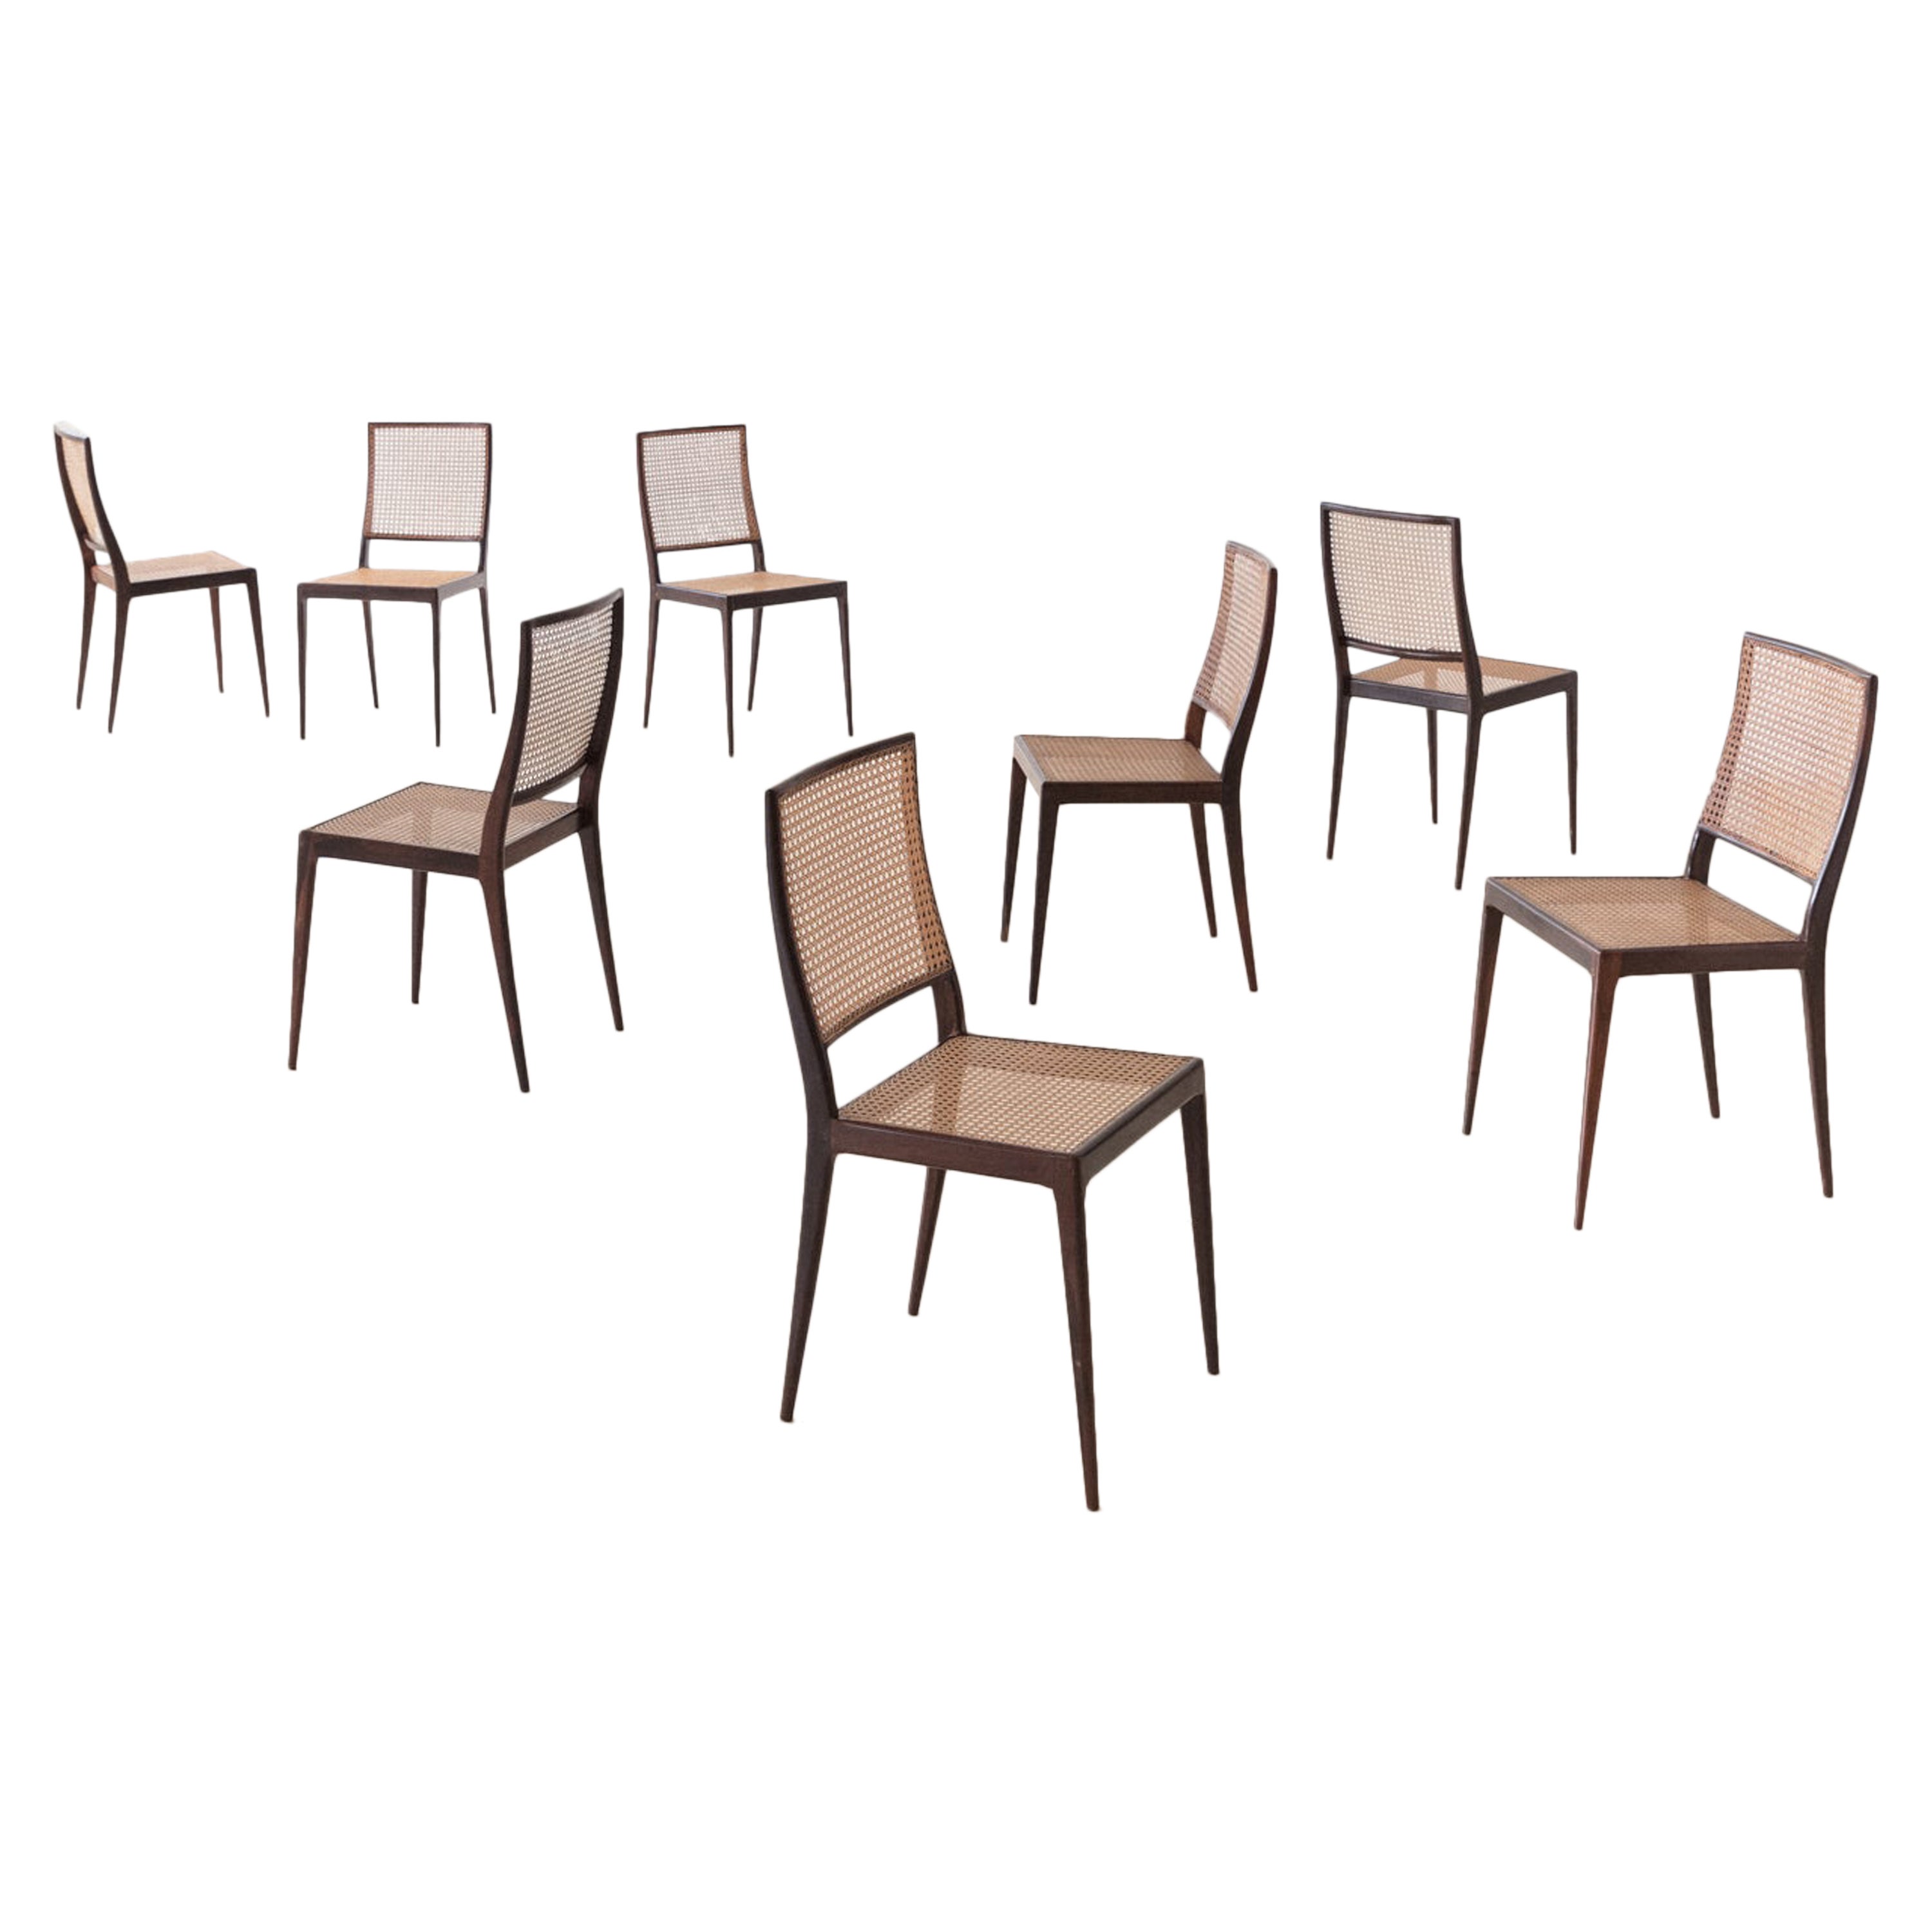 Ensemble de 8 chaises Unilabor MT 552, Geraldo de Barros, années 1960, design brésilien